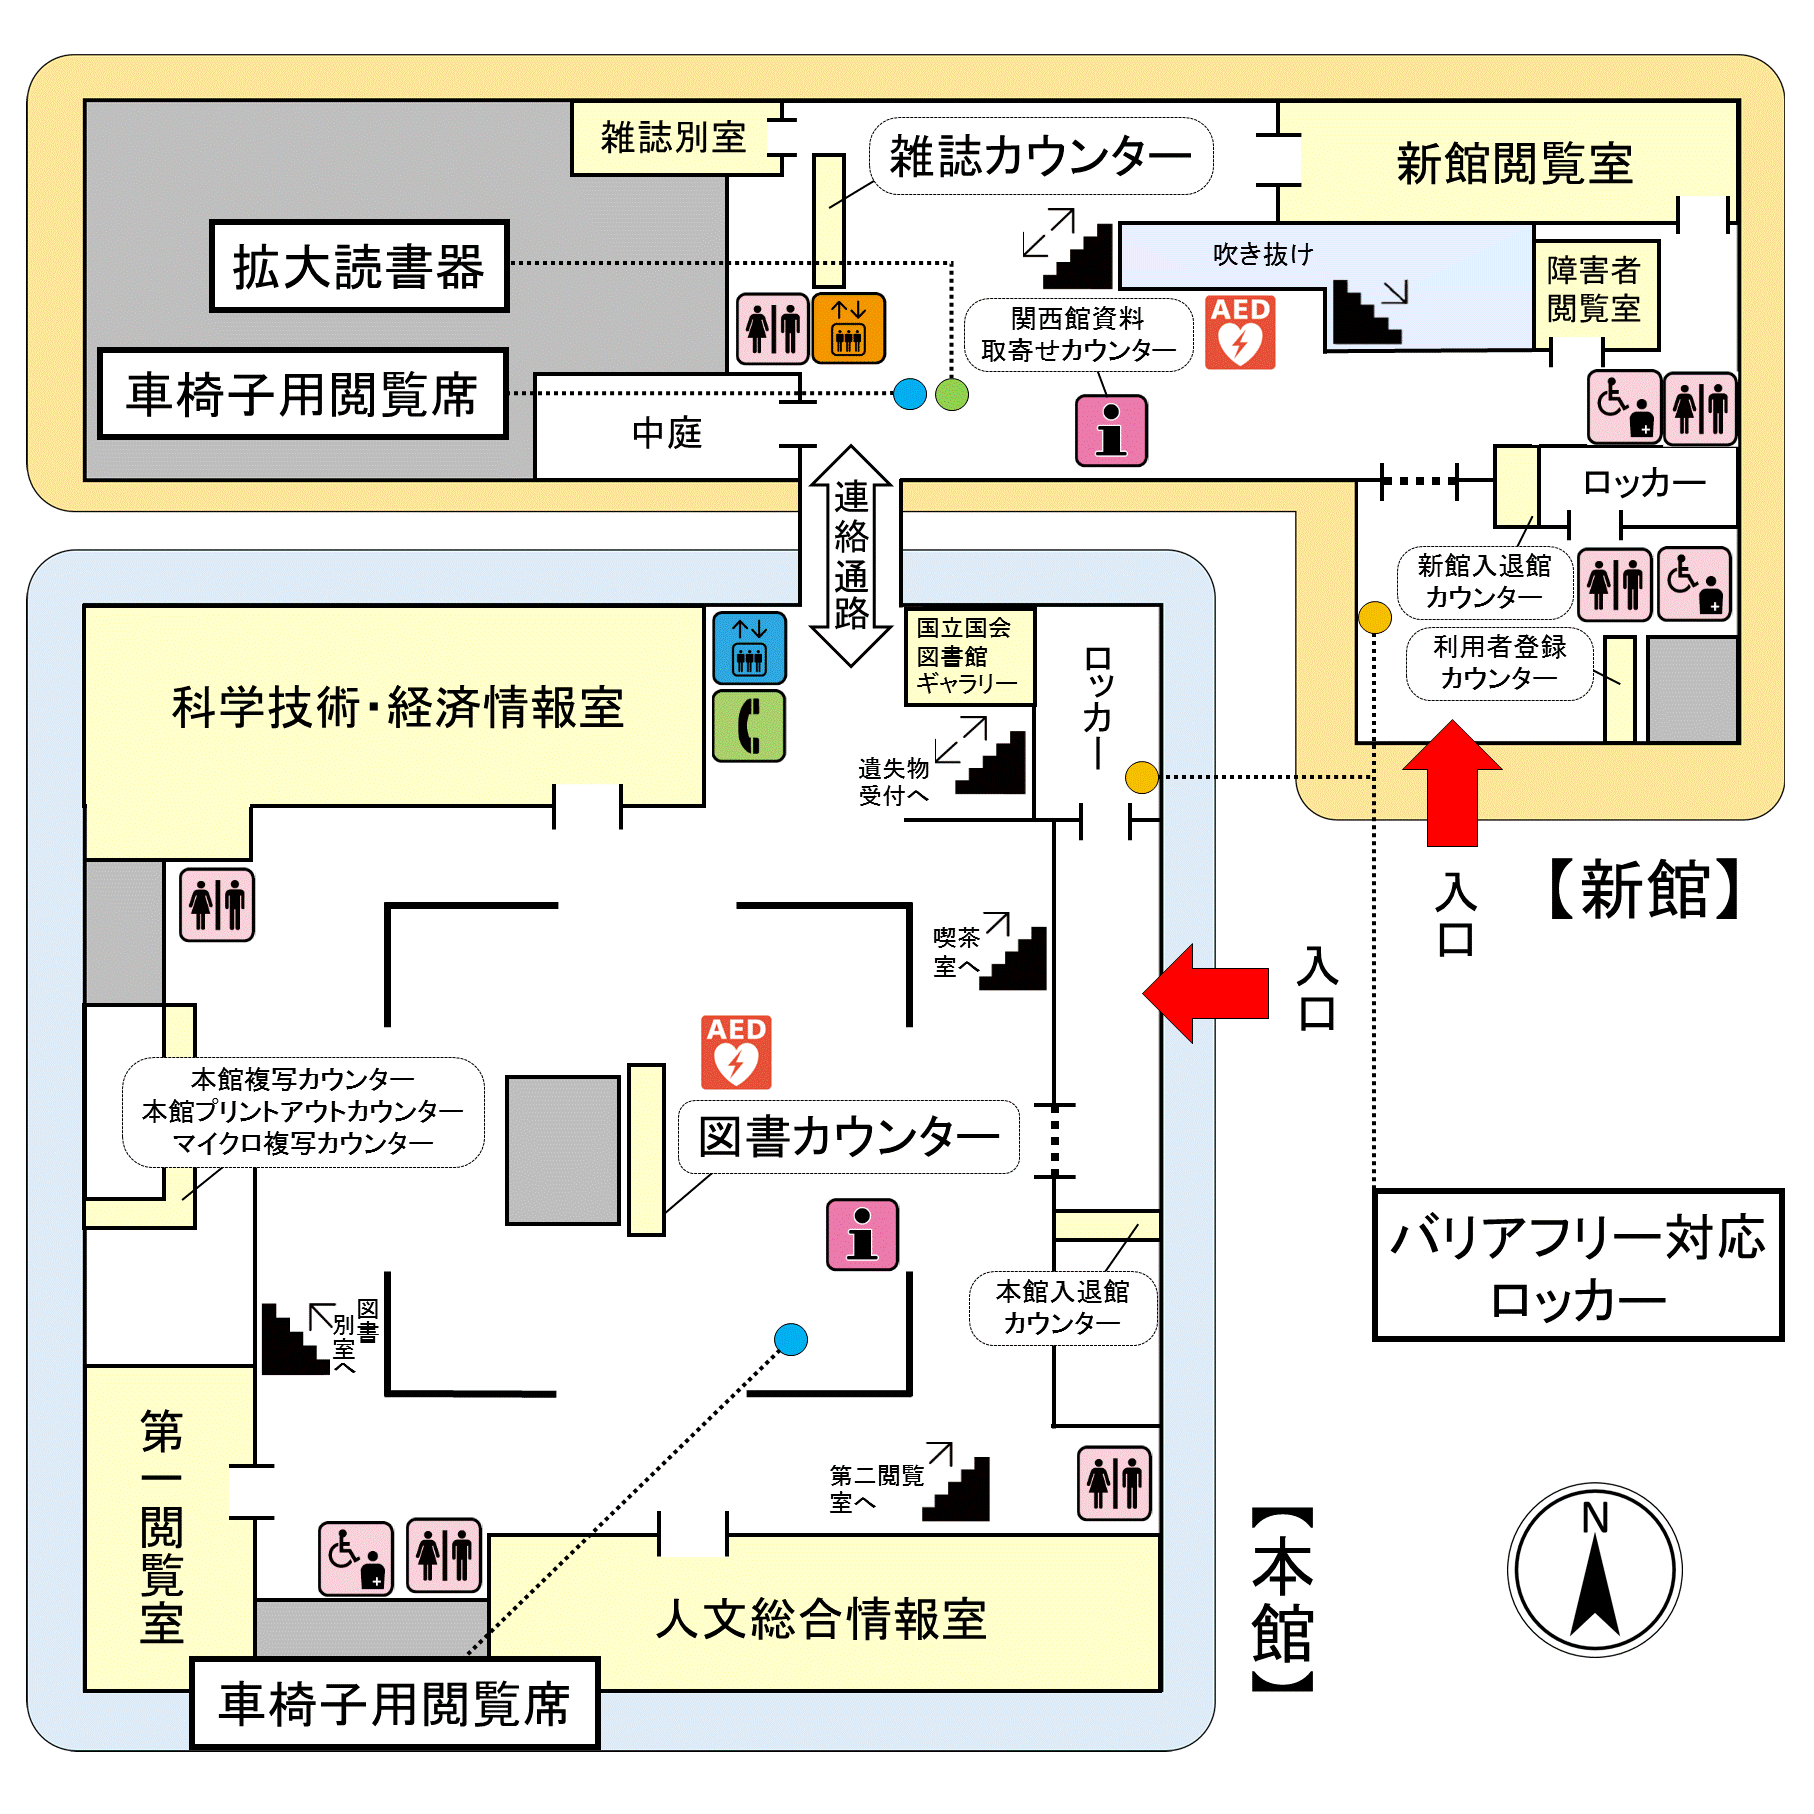 国立国会図書館東京本館2階のフロア案内図です。バリアフリー対応ロッカー、車椅子用閲覧席、拡大読書器、だれでもトイレの位置を表示しています。